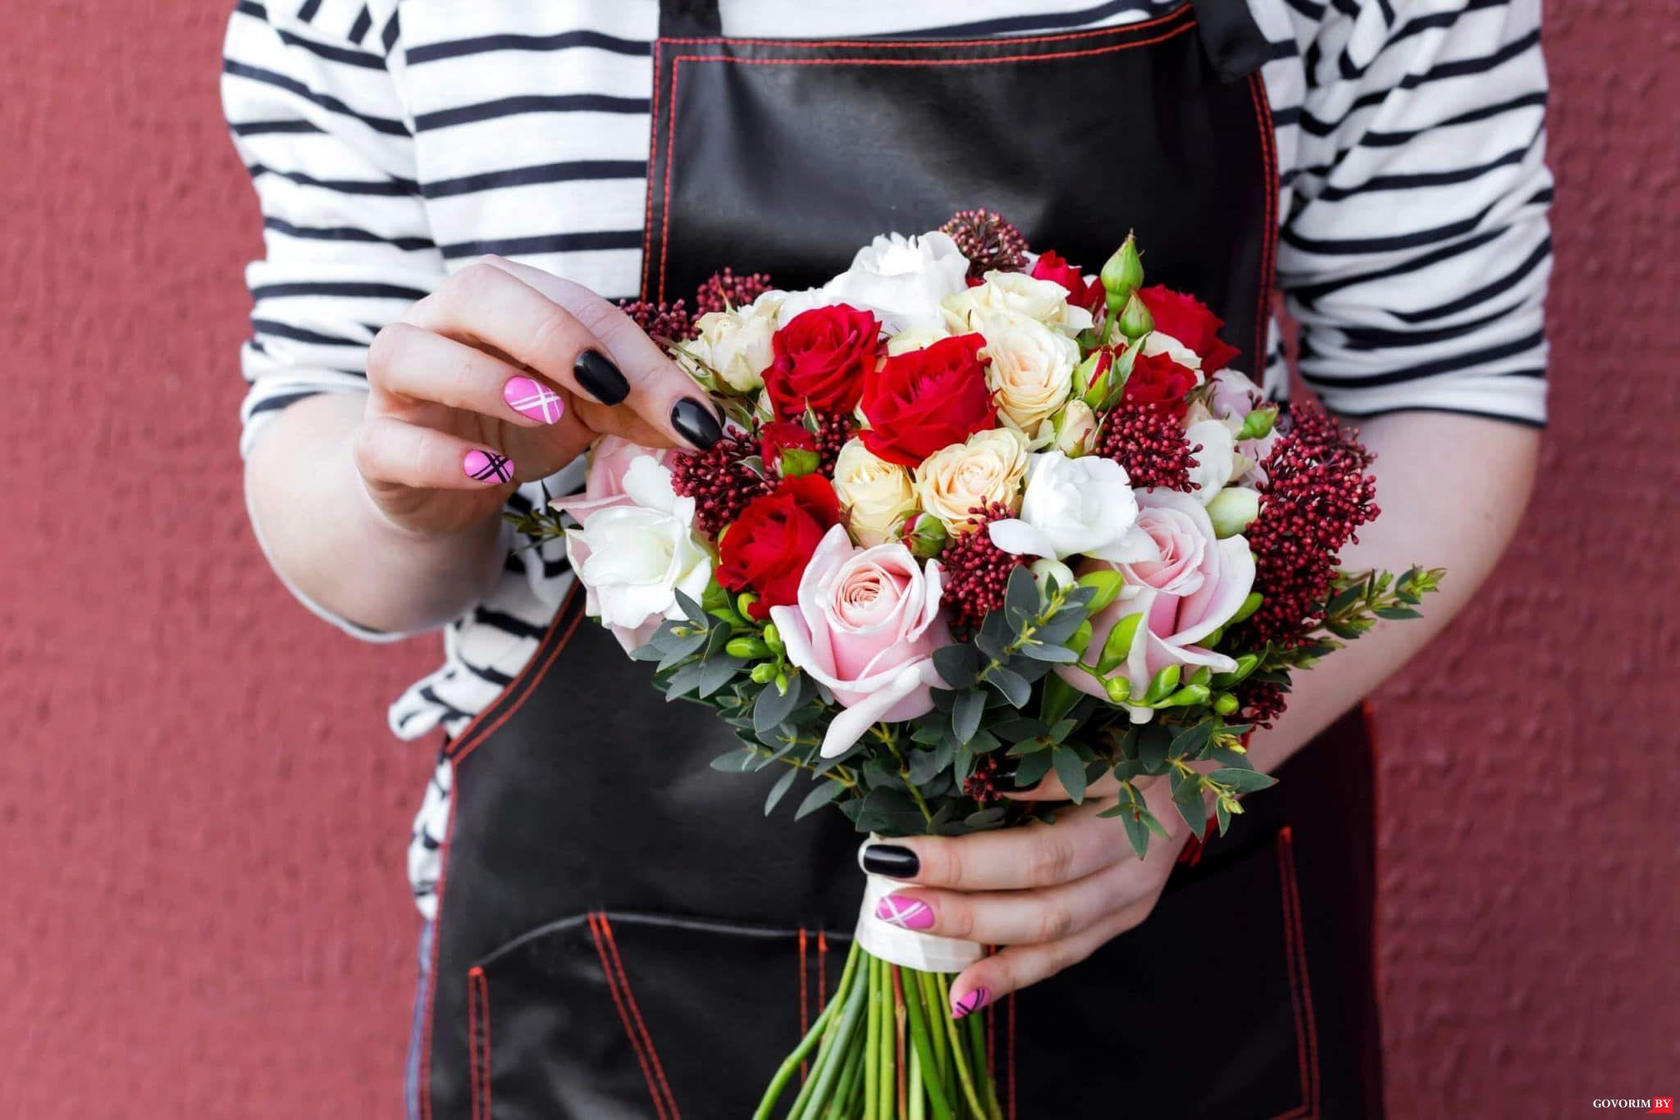 Сборный букет цветов в руках женщины